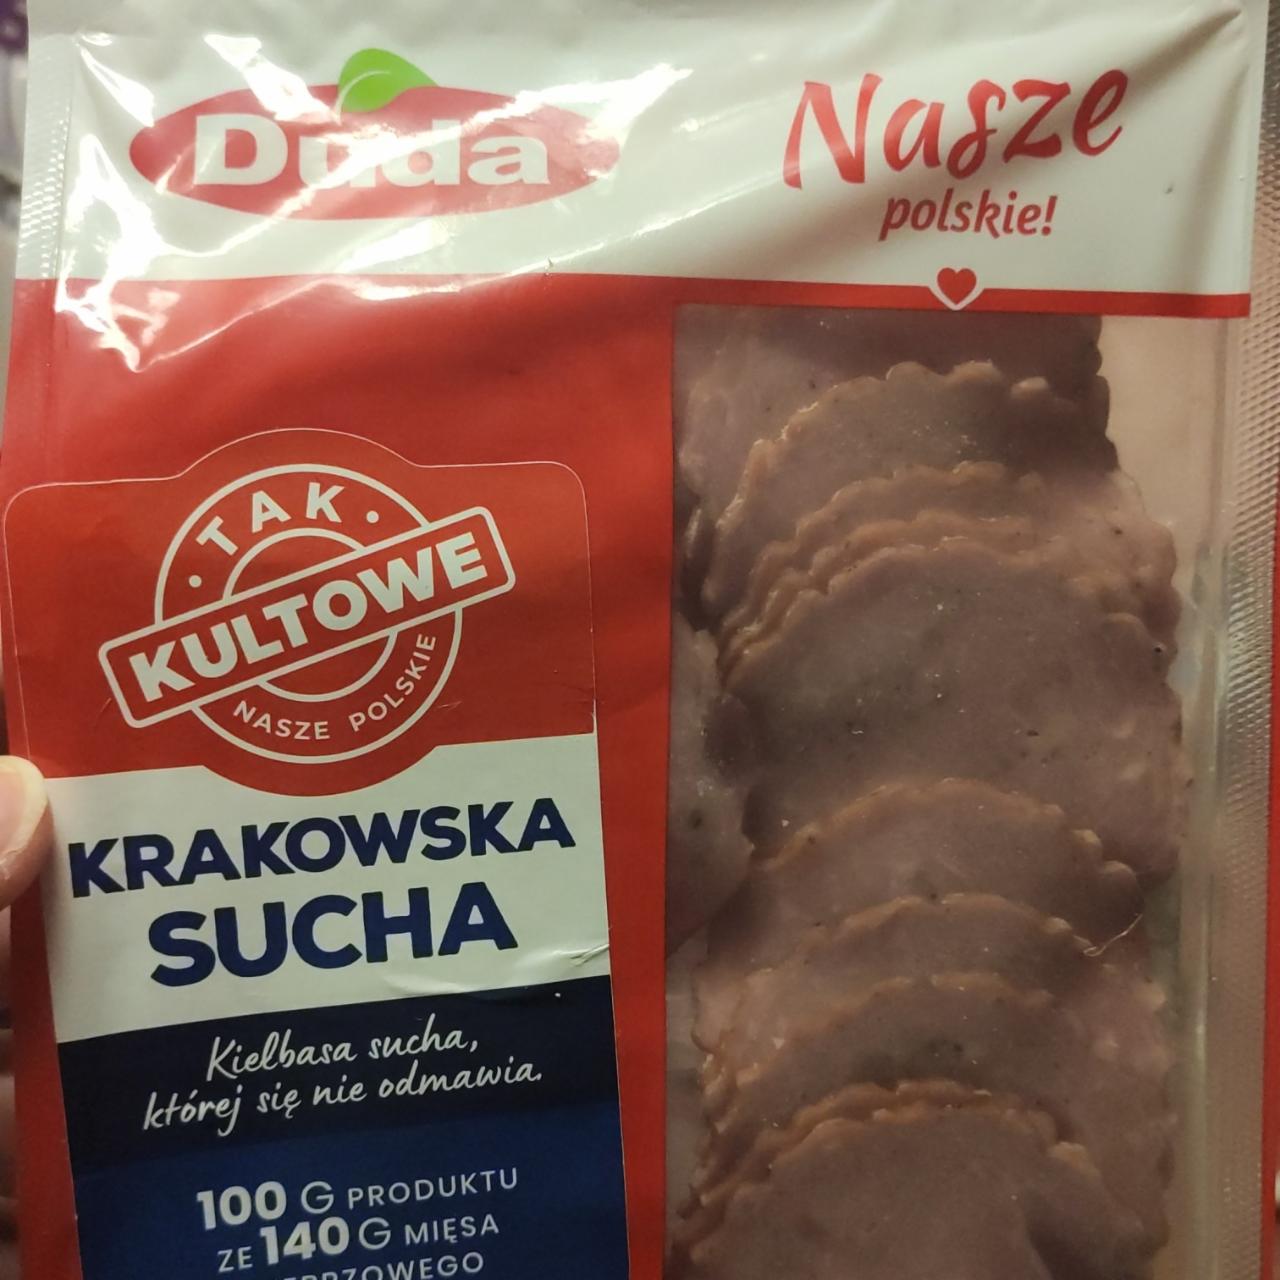 Fotografie - Nasze polskie! Krakowska Sucha Duda